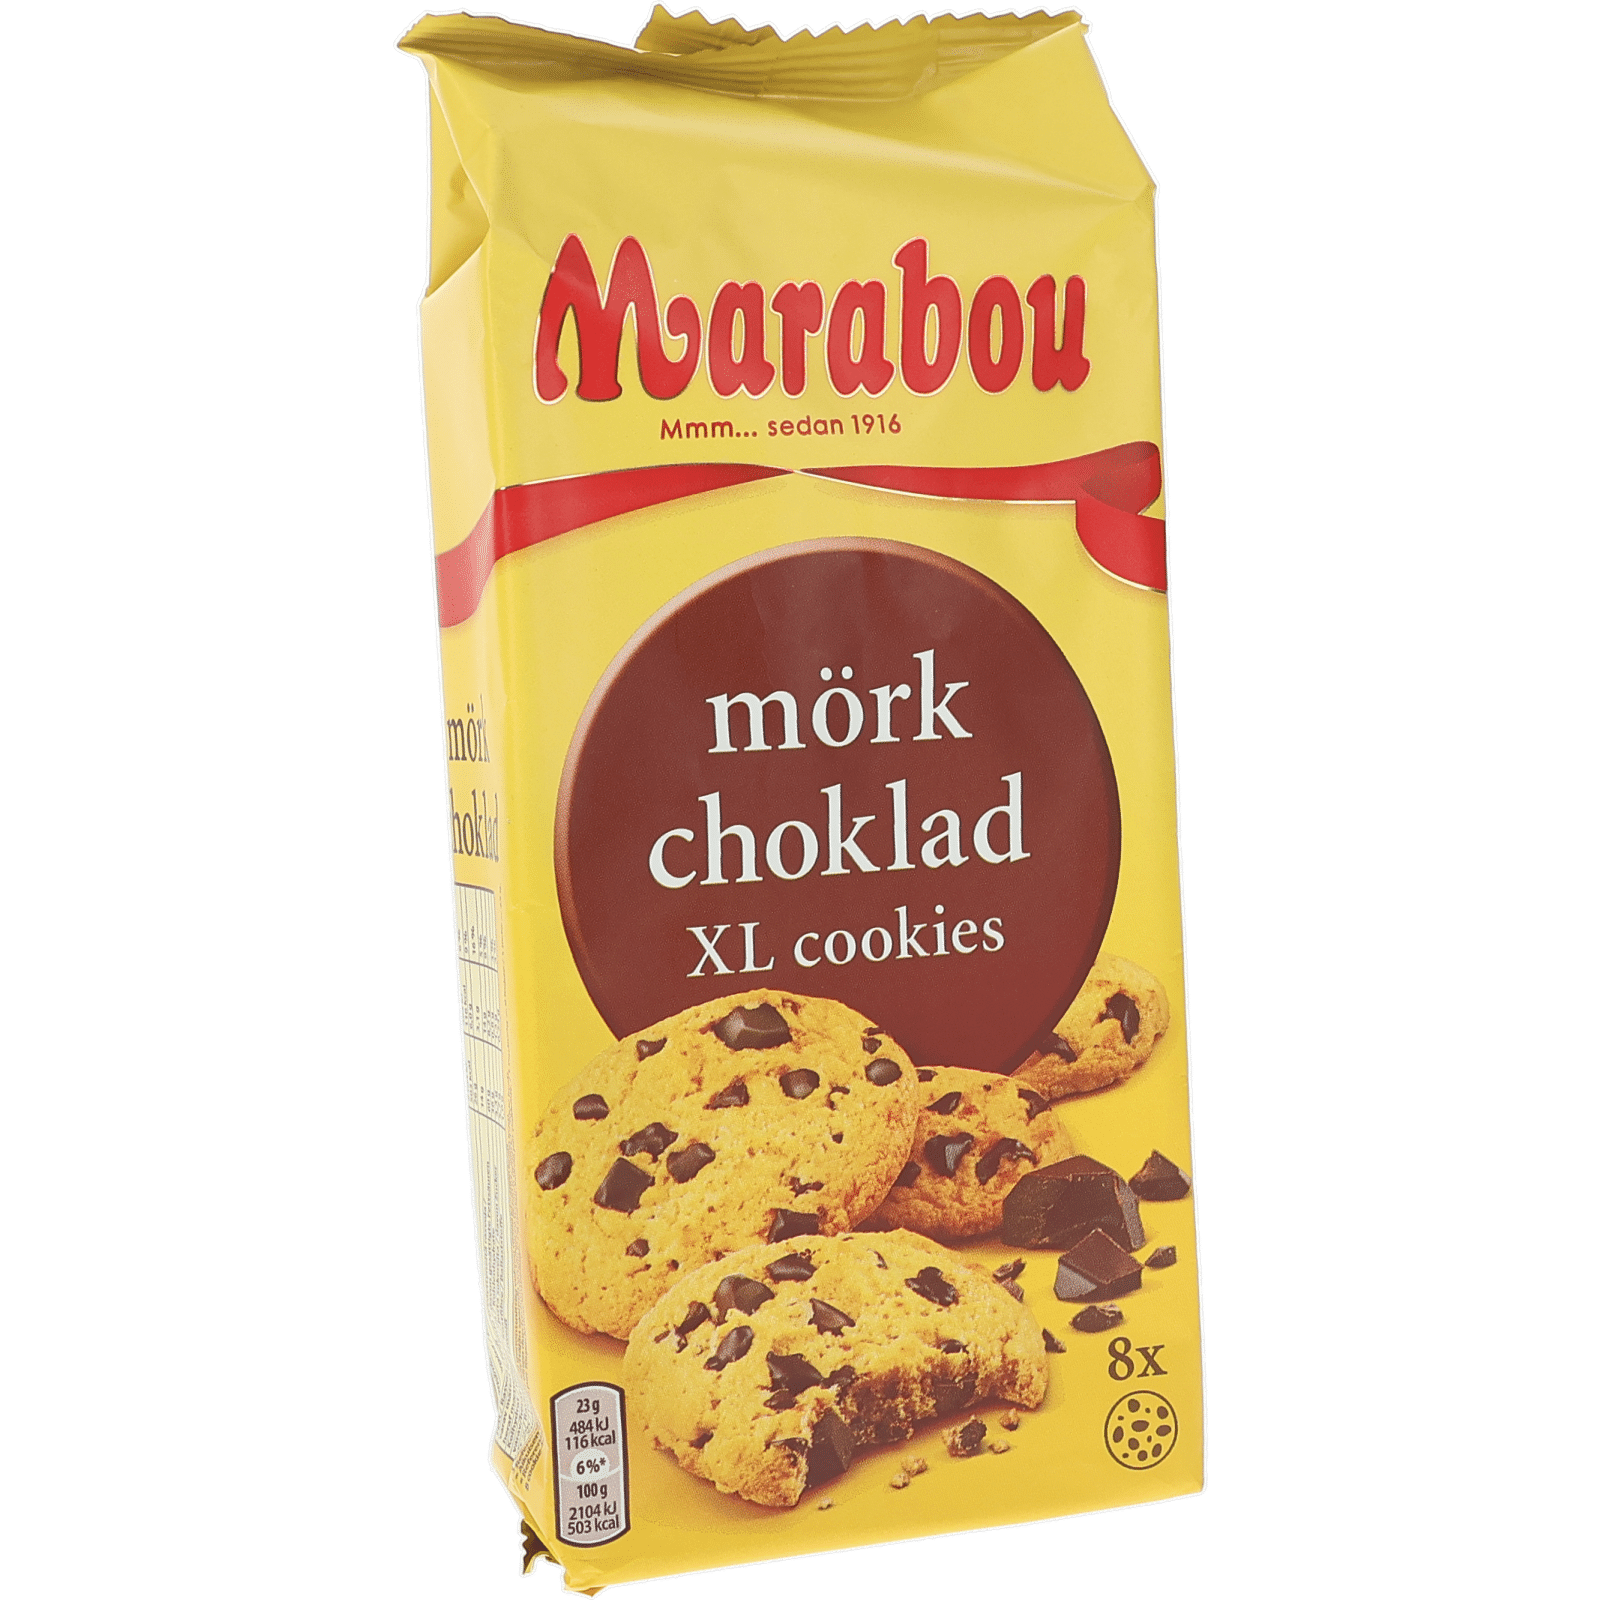 Marabou Cookies XL Mörk Choklad